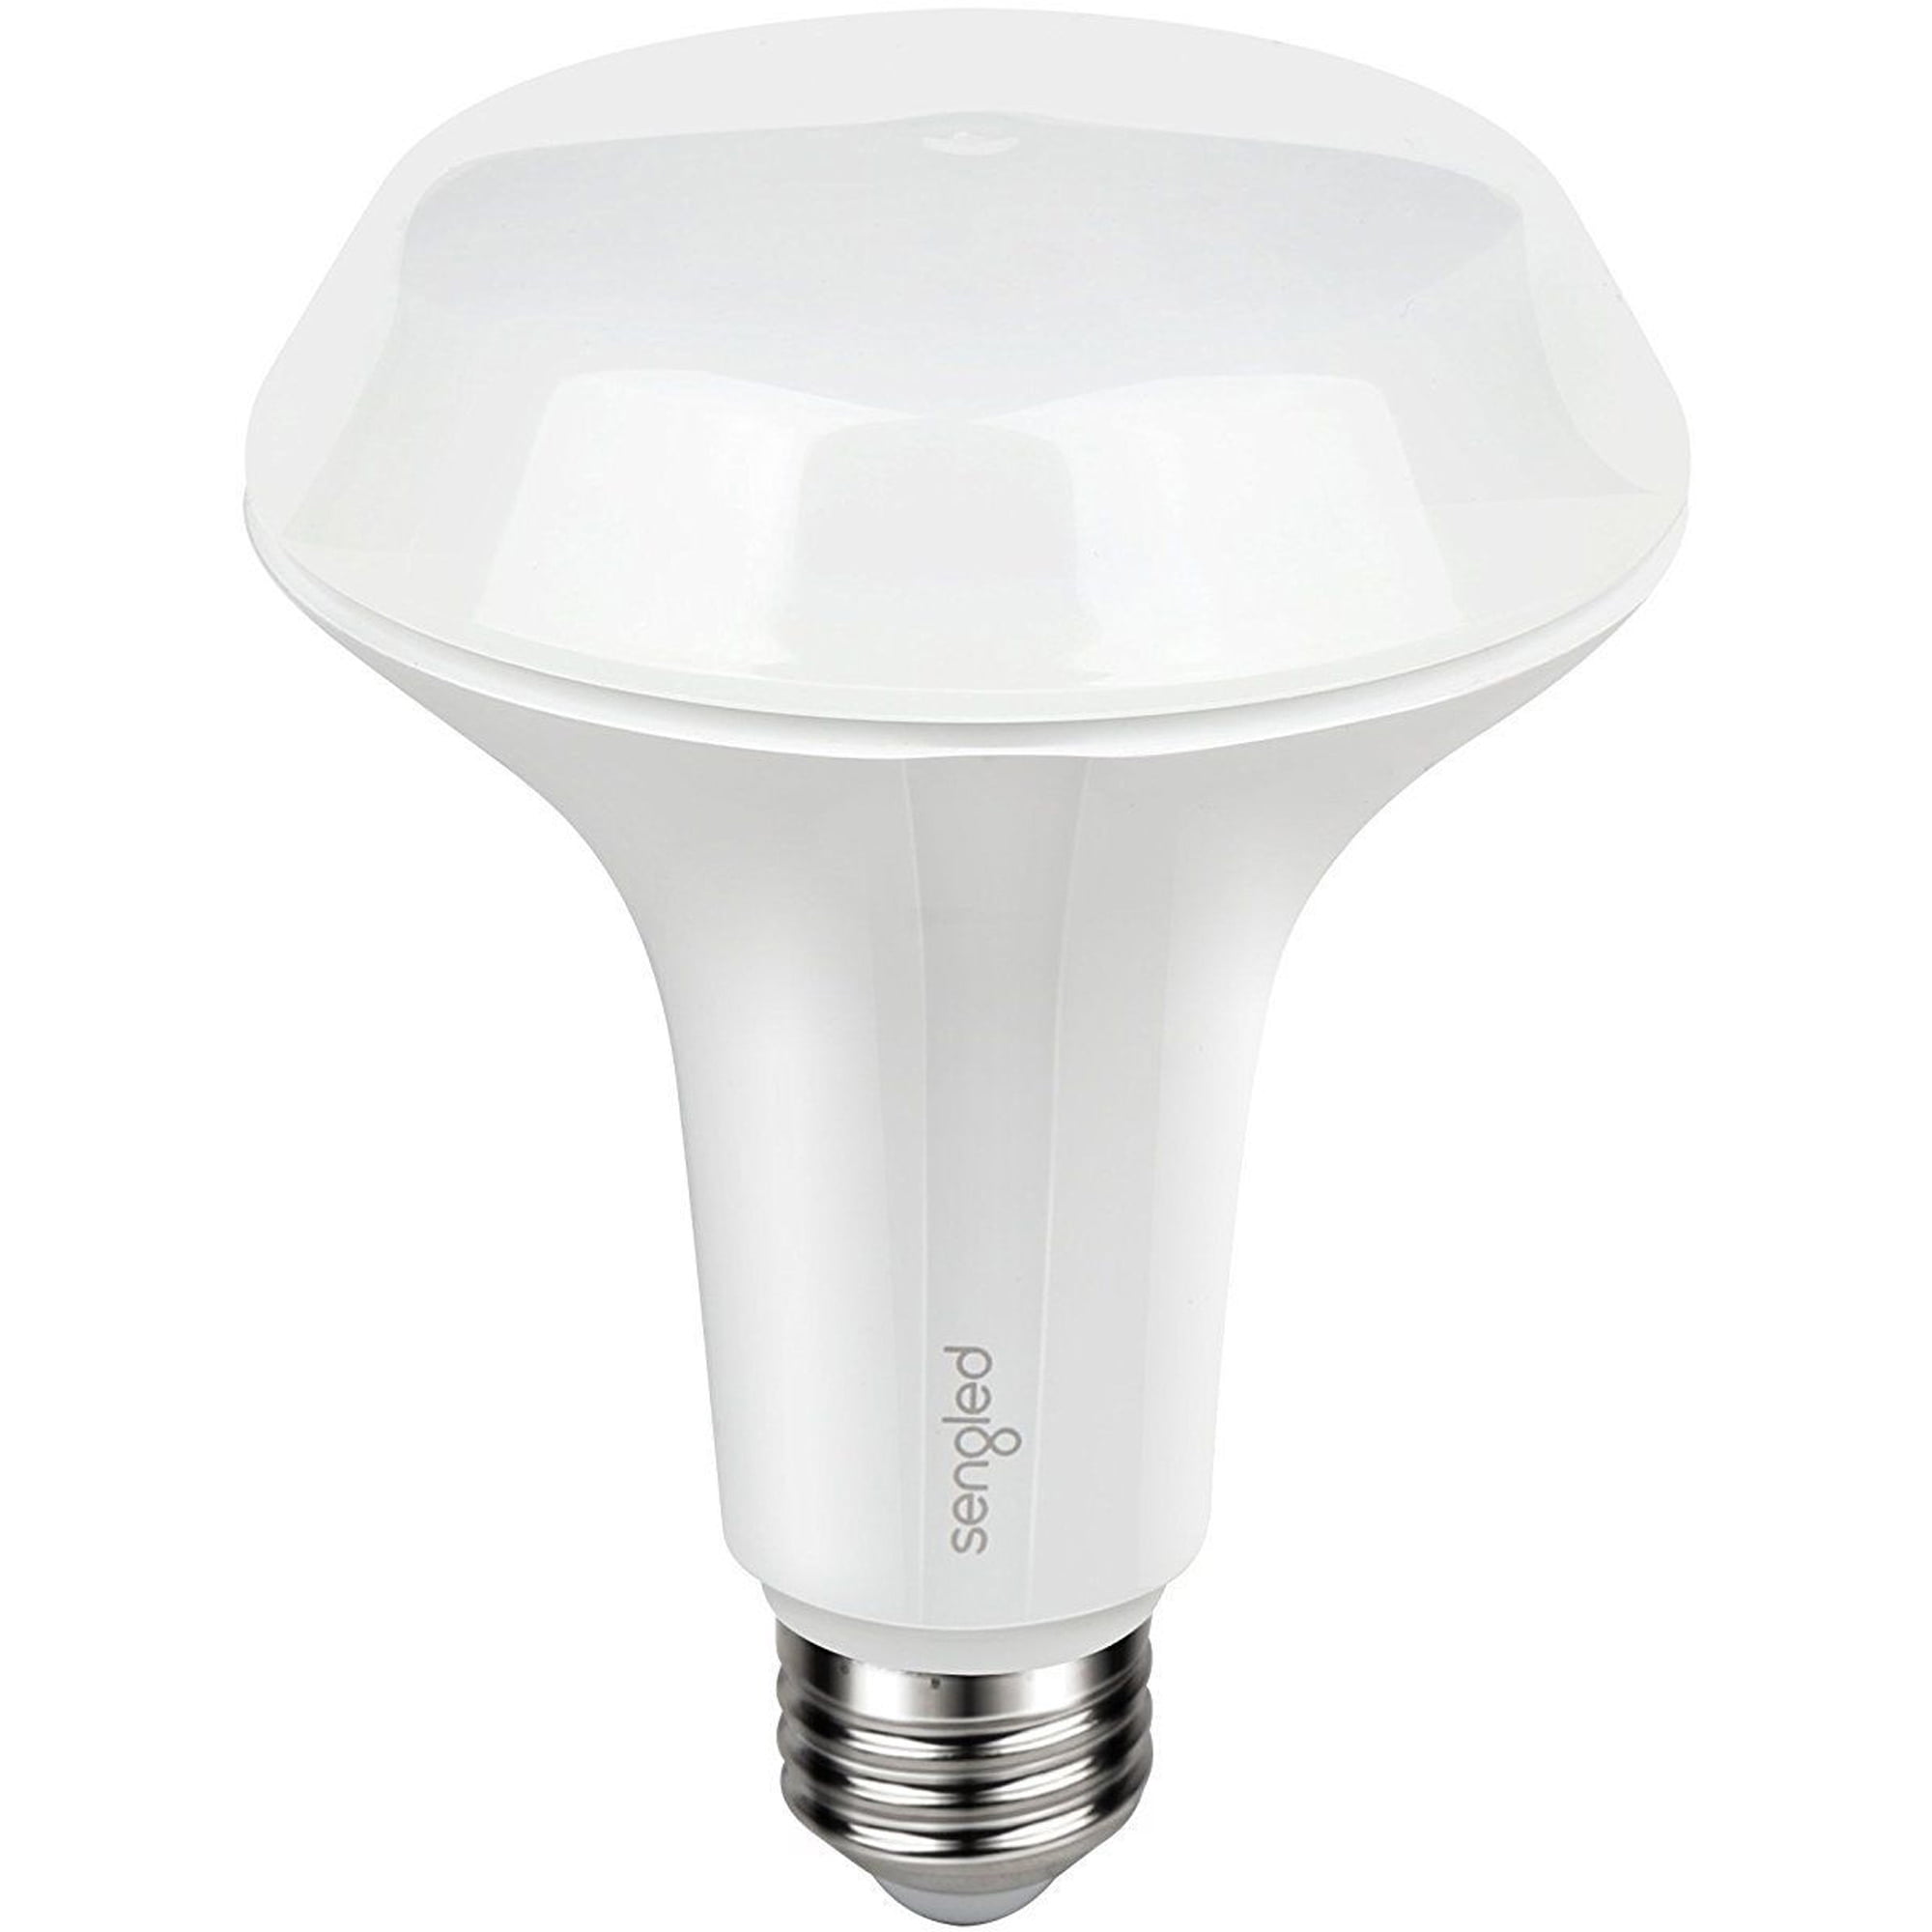 Picture of Sengled 3768272 Twilight LED Bulb 8 watt 650 Lumens 2700 K BR30 Soft White 65 watt Equivalency